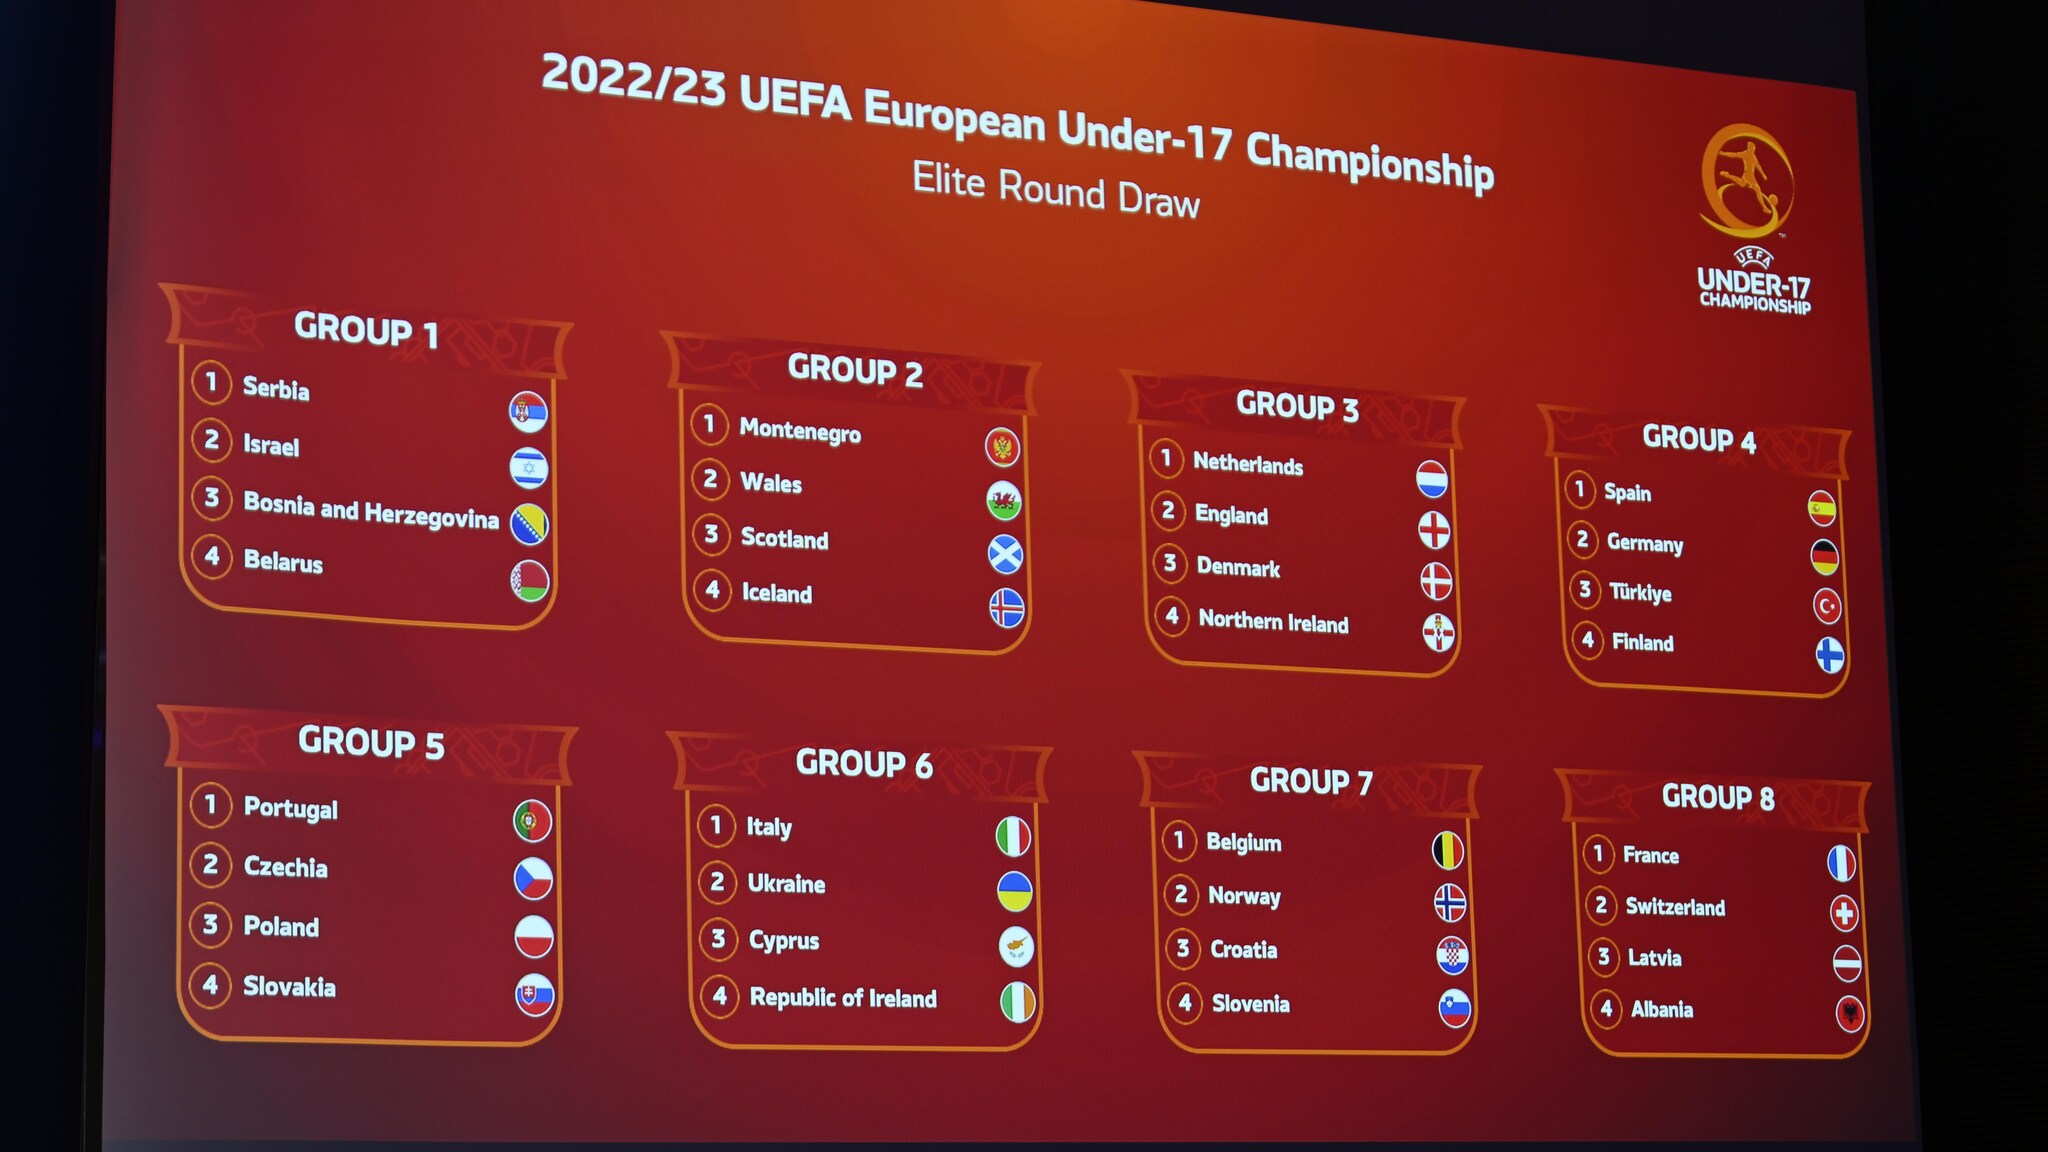 La ronda élite de la EURO U17 2022/23 comienza el 7 de marzo |  menores de 17